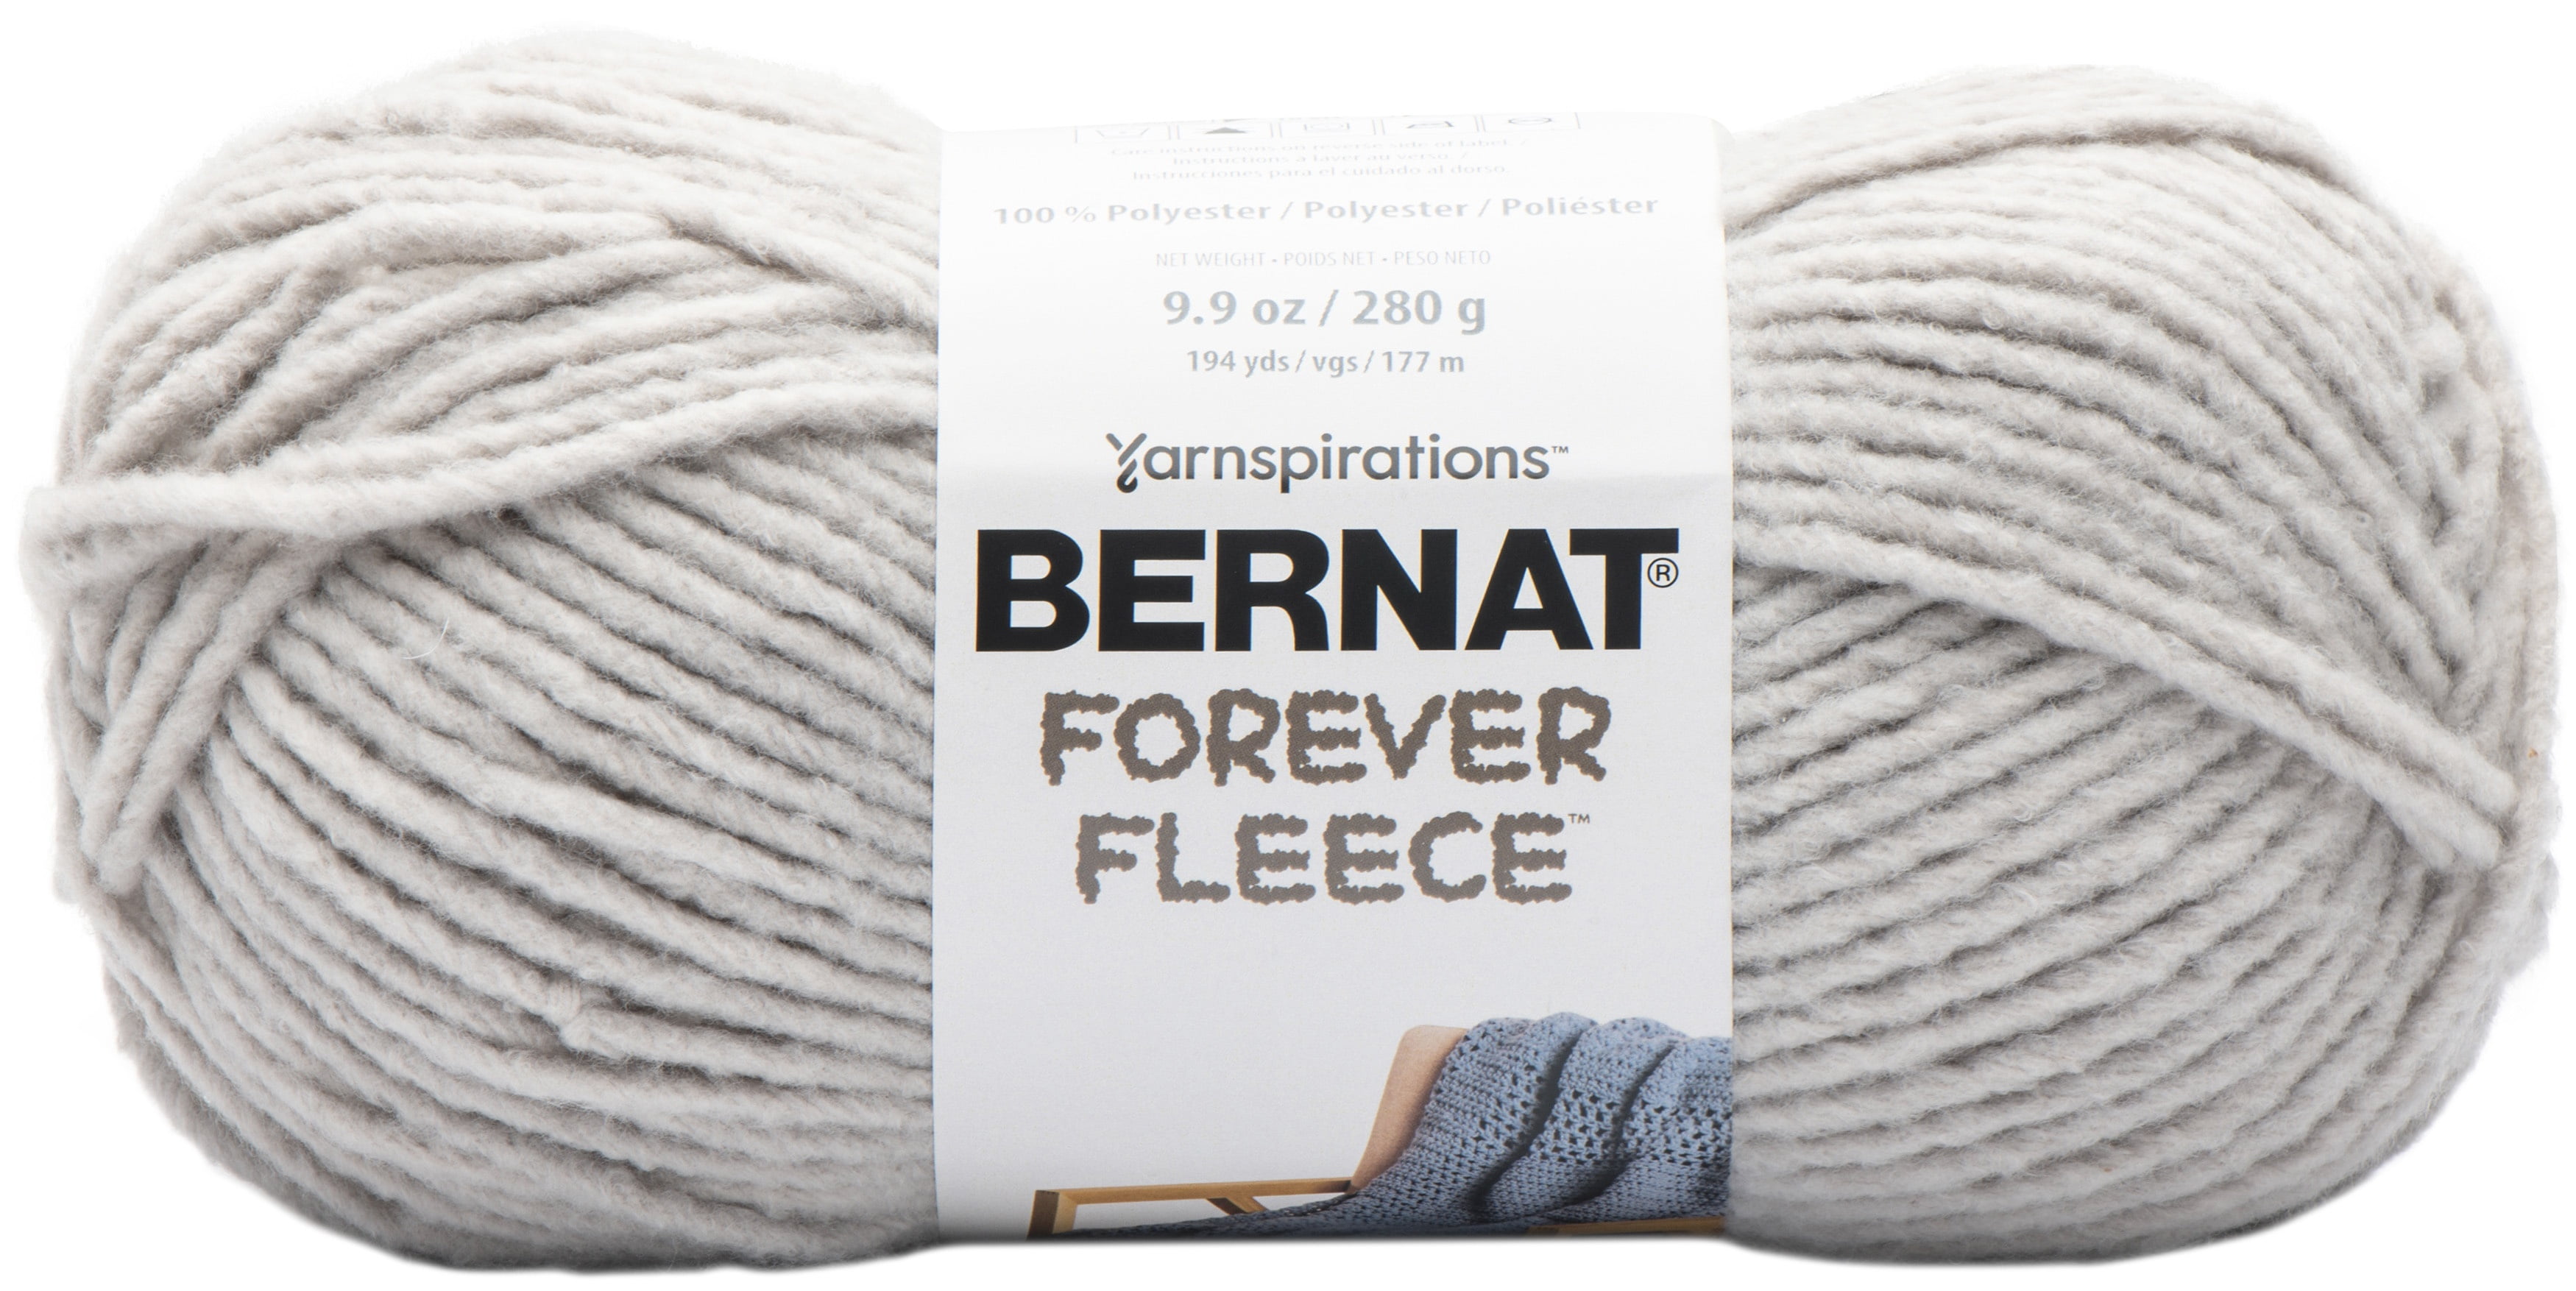 Bernat Forever Fleece Yarn - White Noise